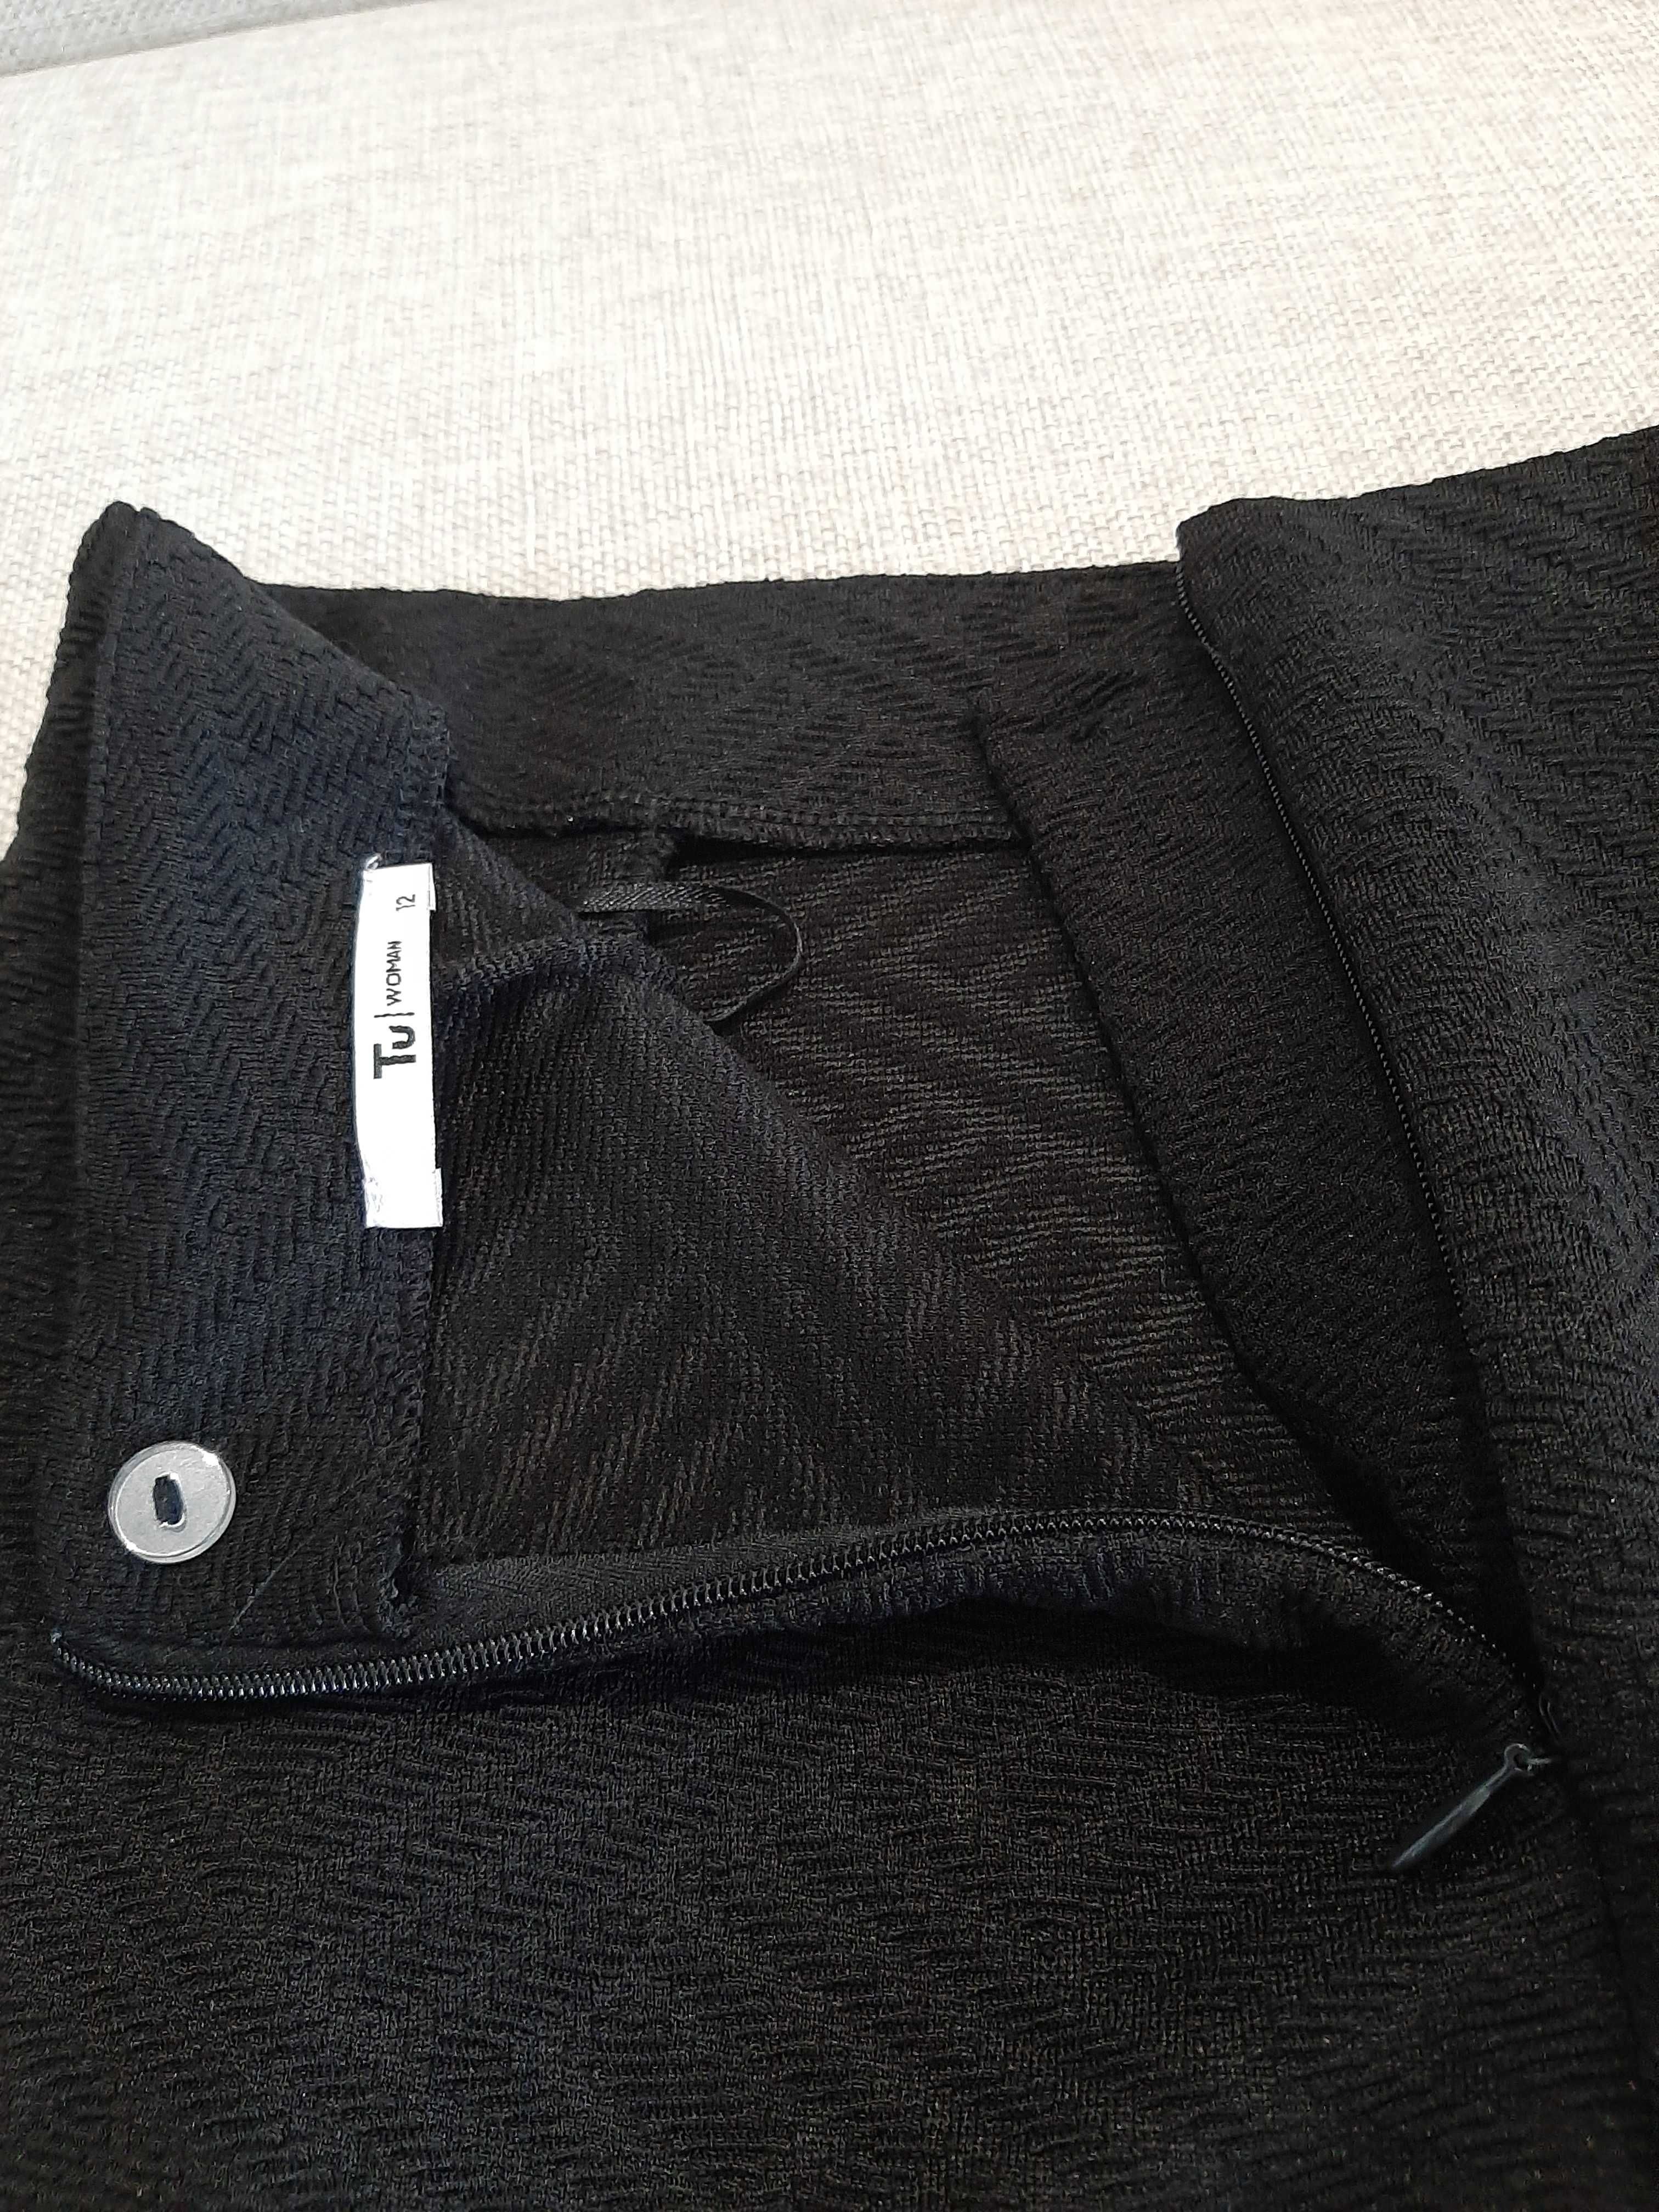 Czarna ołòwkowa spódnica TU - L